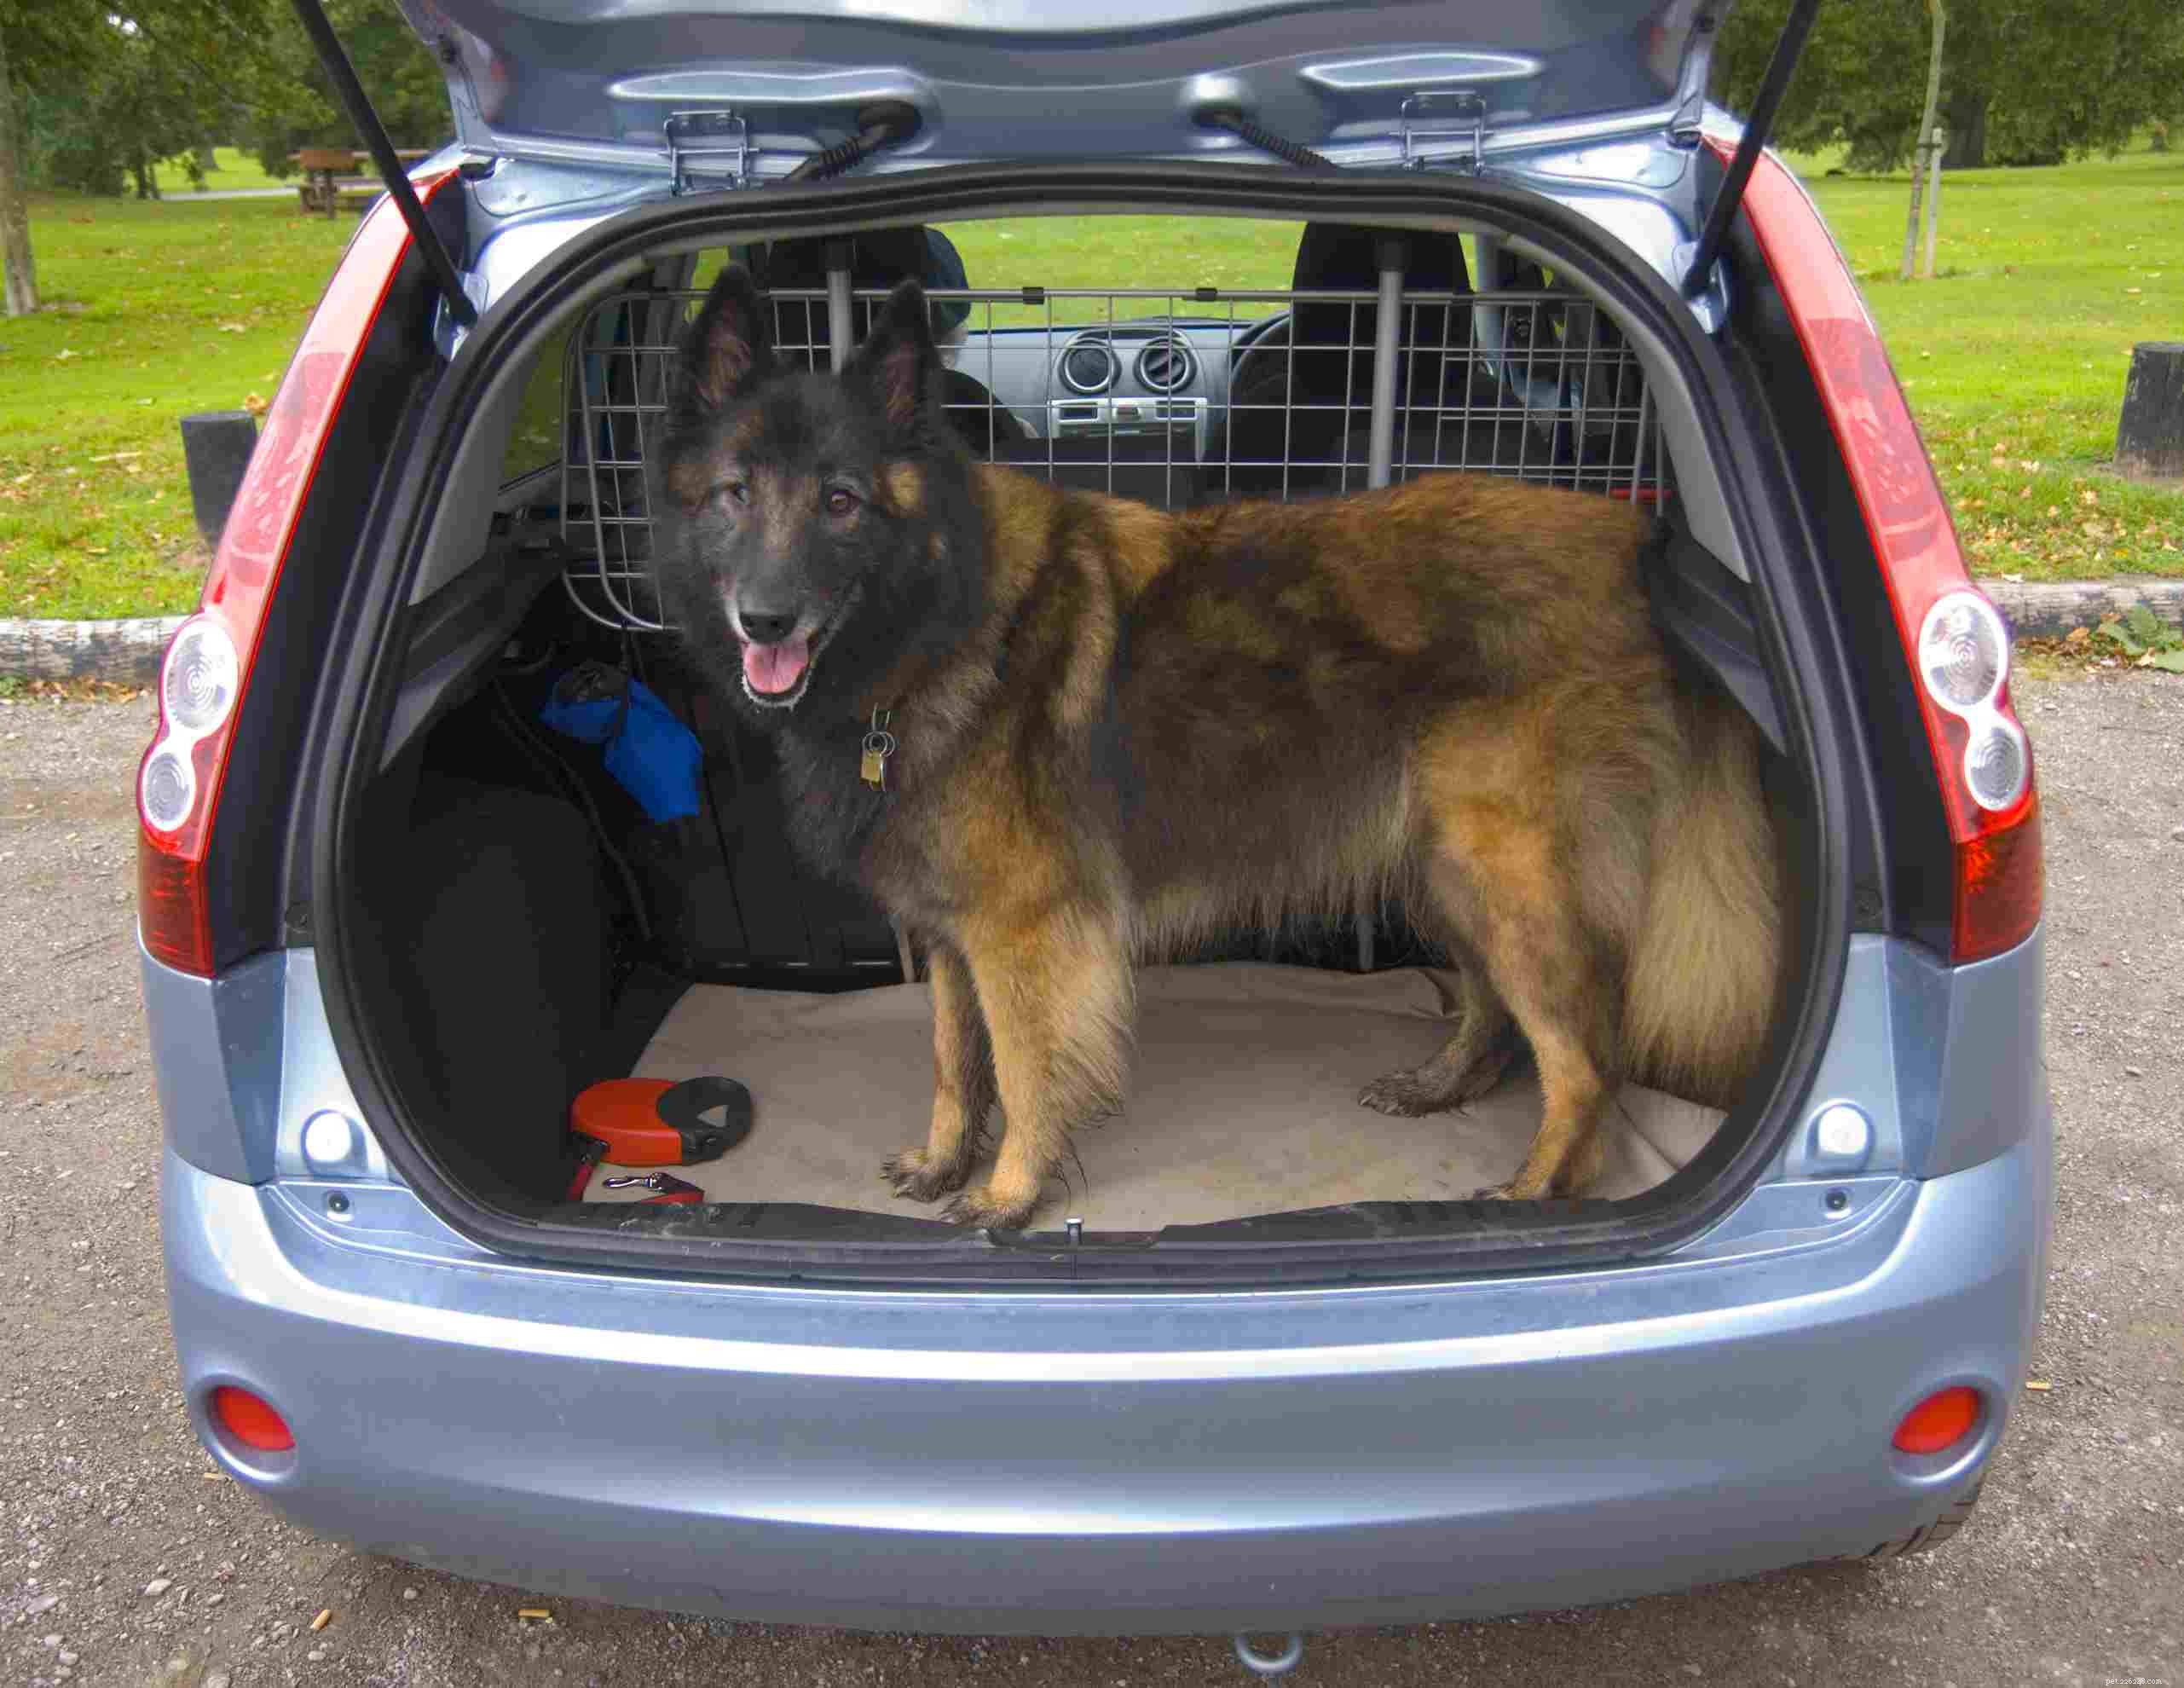 Melhor maneira de prender um cachorro no carro por segurança